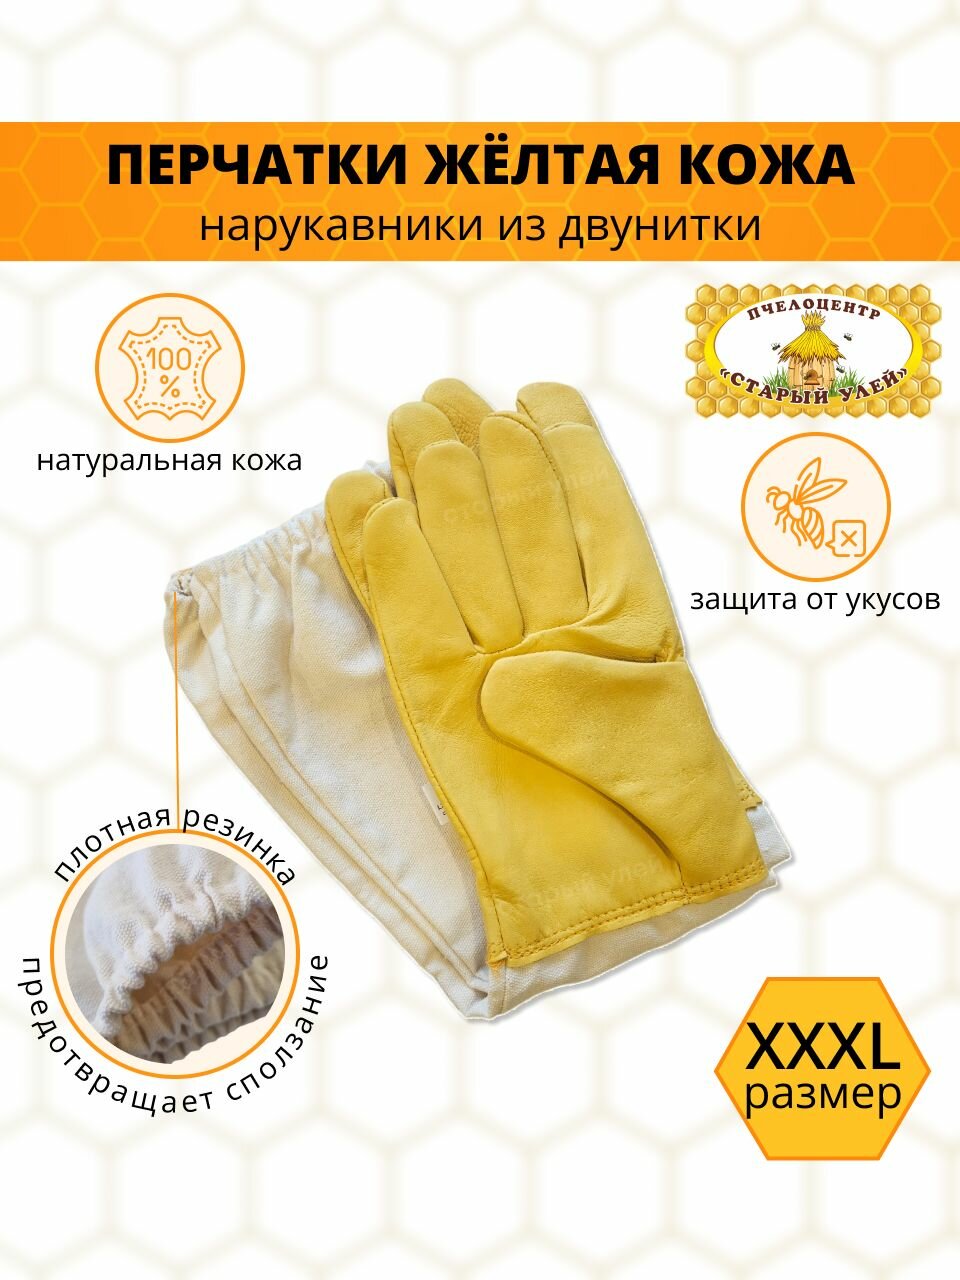 Перчатки пчеловода желтые / кожа с защитными нарукавниками/ размер XXXL